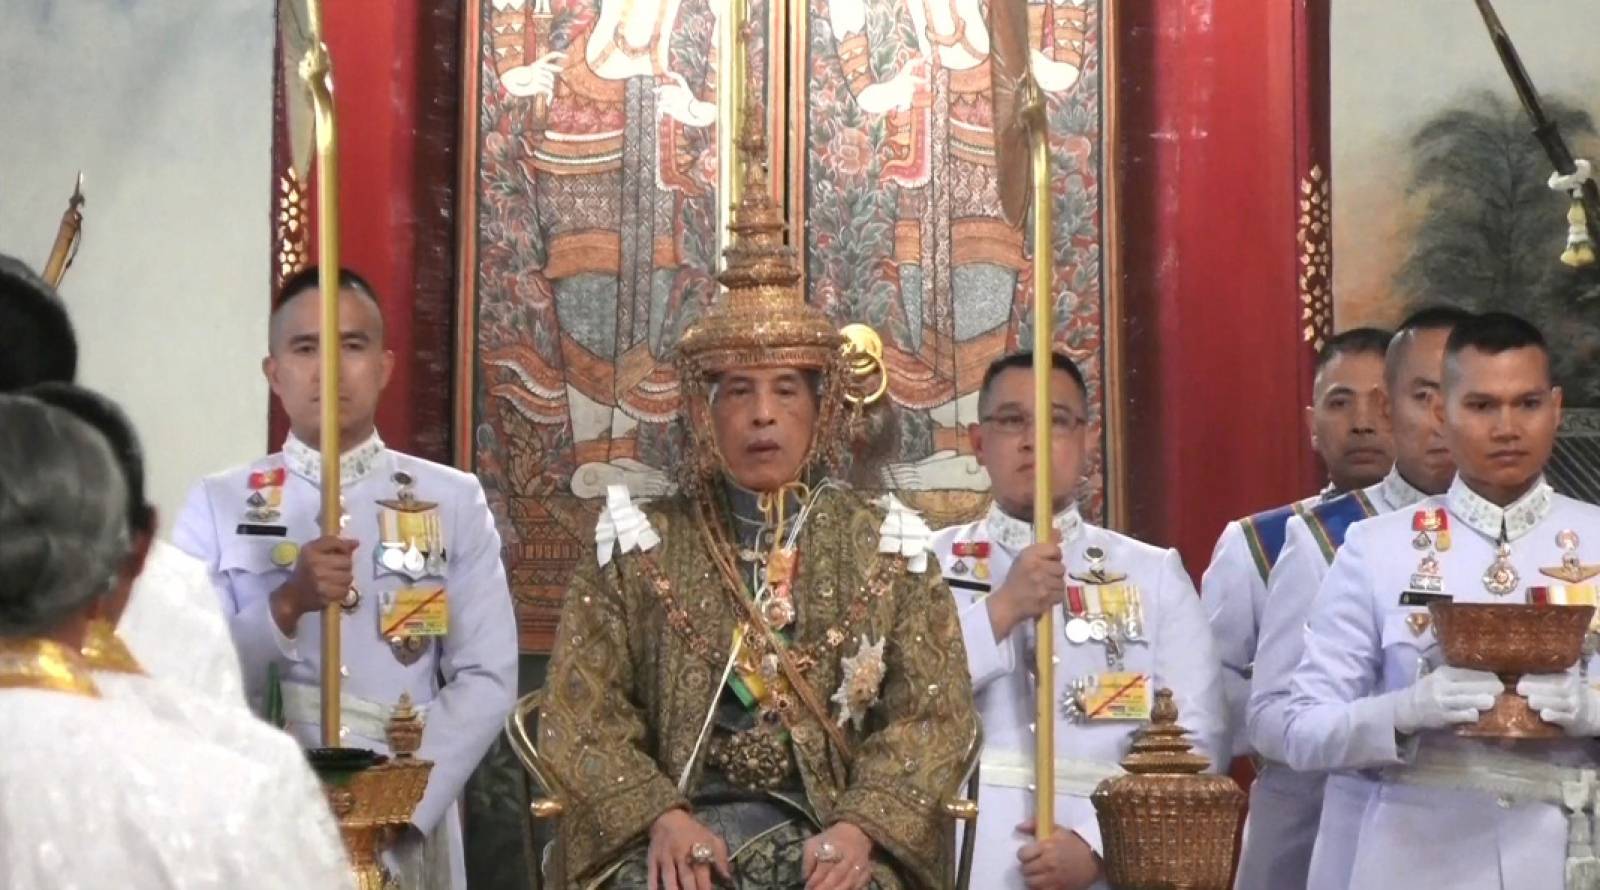 Thailand's King Maha Vajiralongkorn is crowned during his coronation in Bangkok